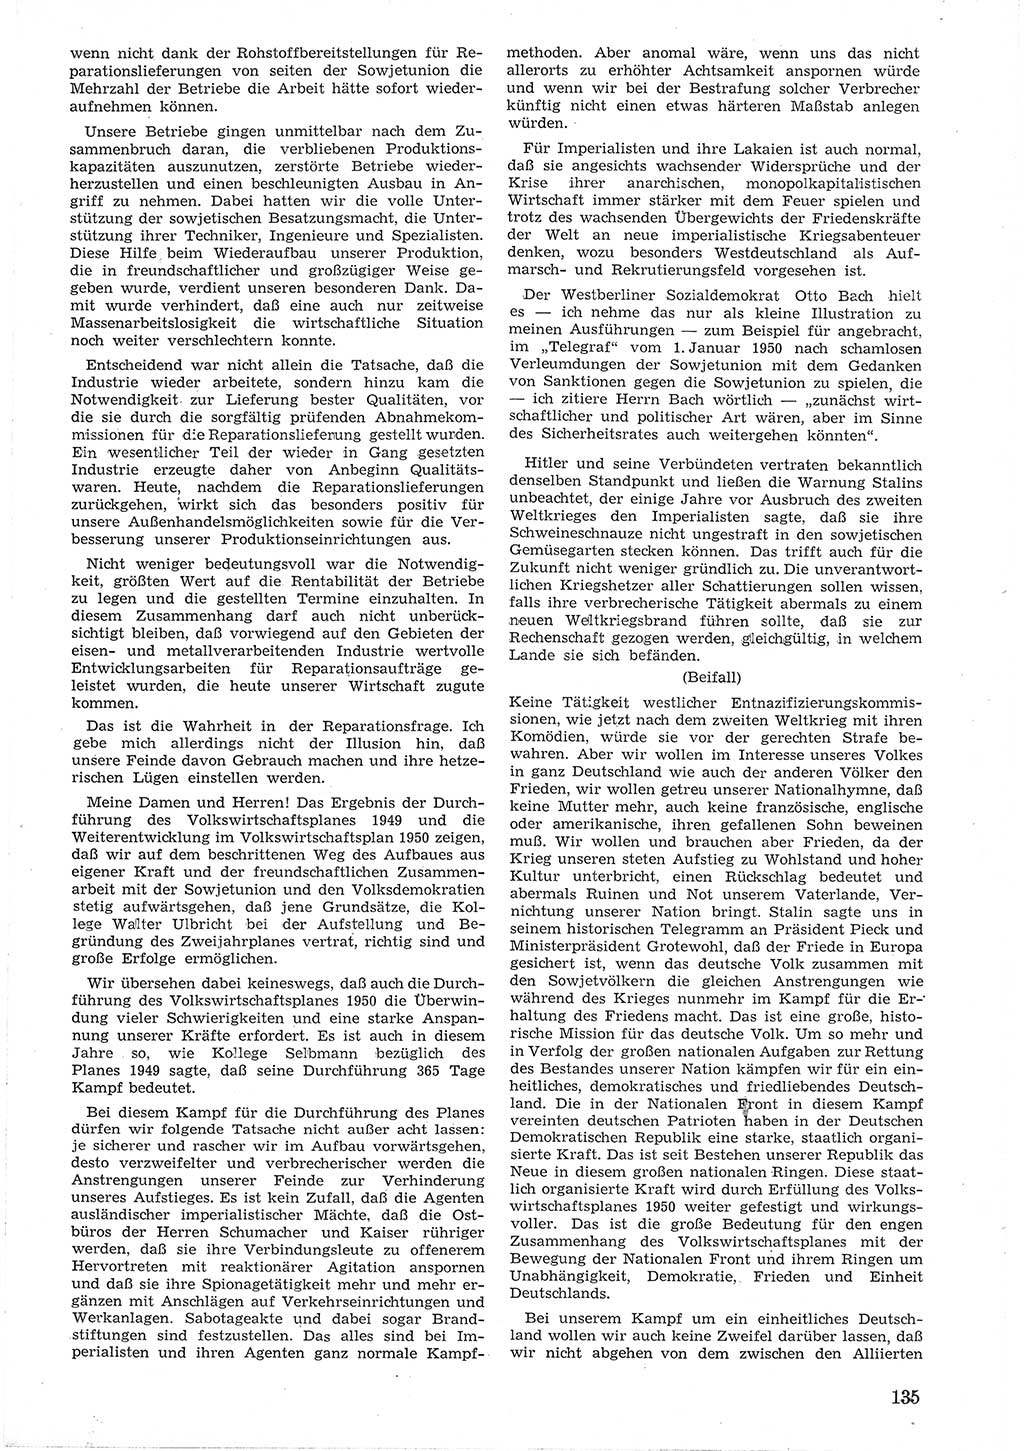 Provisorische Volkskammer (VK) der Deutschen Demokratischen Republik (DDR) 1949-1950, Dokument 147 (Prov. VK DDR 1949-1950, Dok. 147)